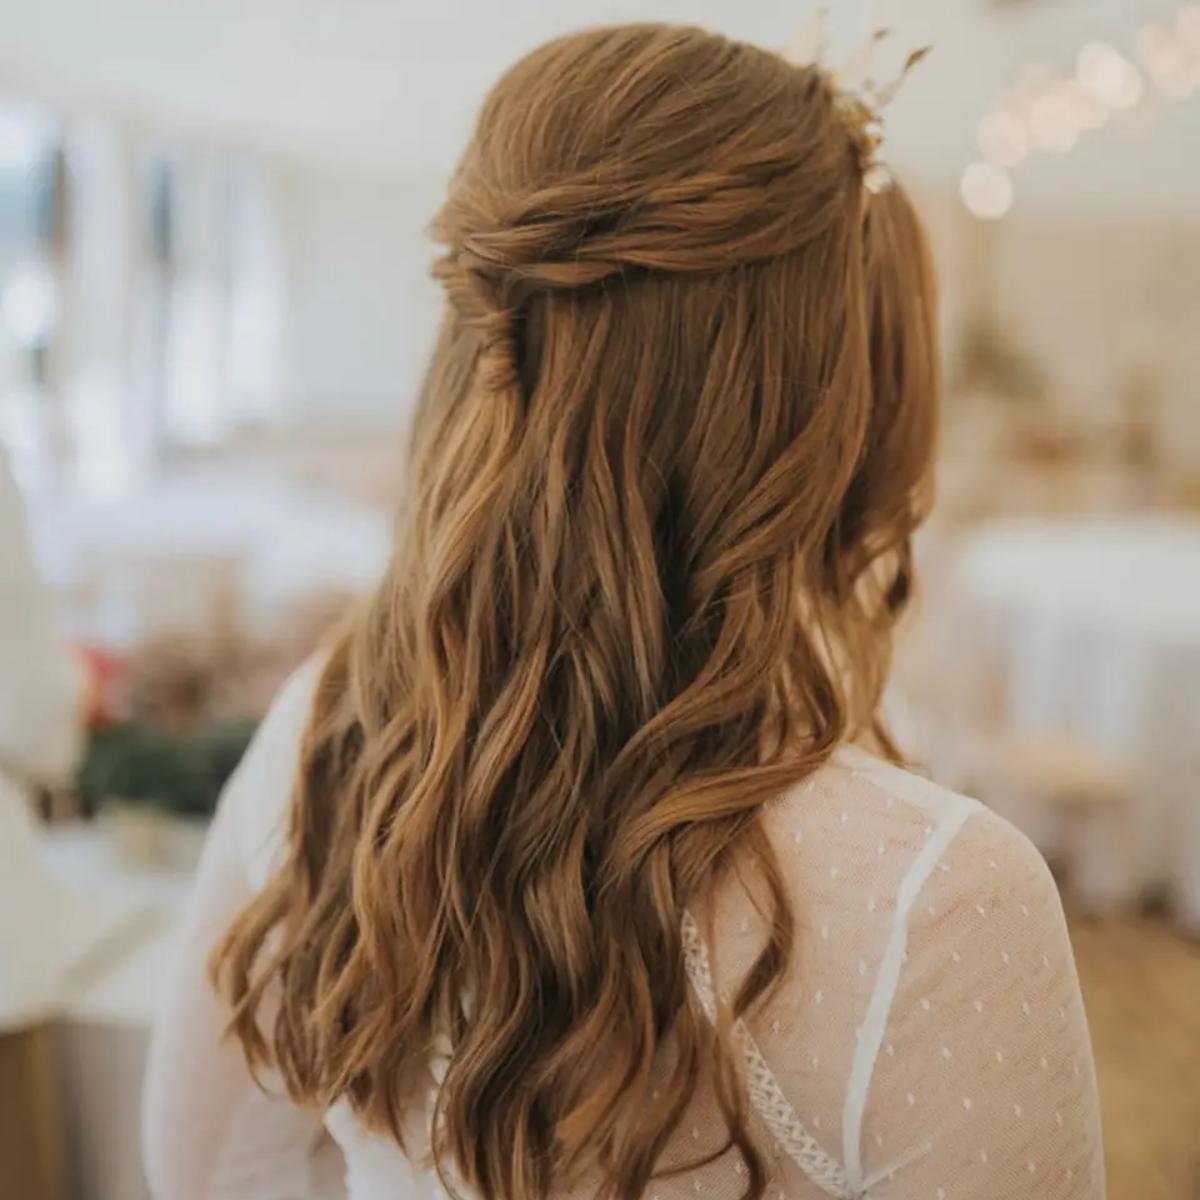 Half Up Half Down Wedding Hair: 40 Hairstyles Brides Love